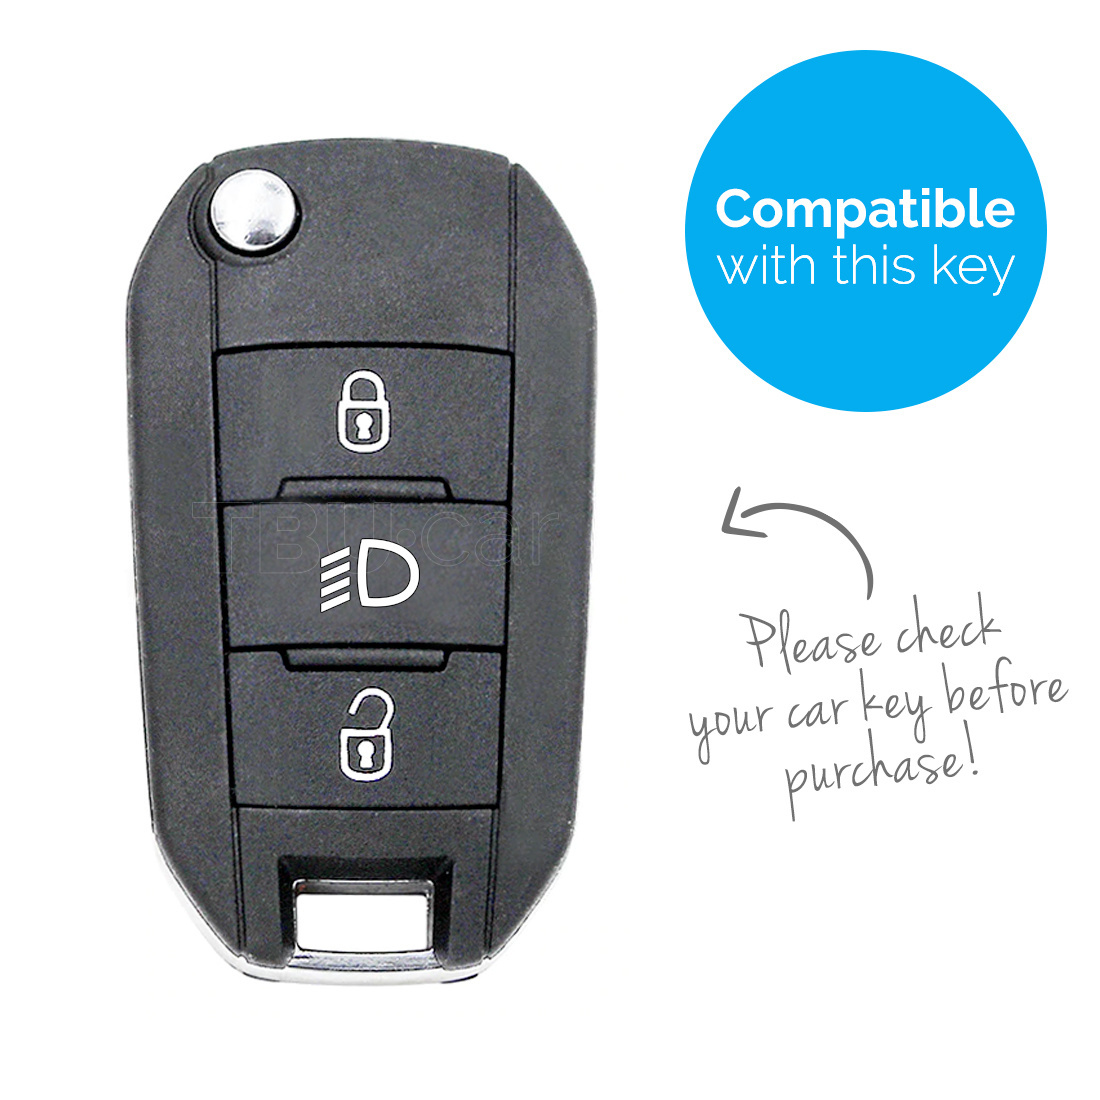 TBU car TBU car Autoschlüssel Hülle kompatibel mit Peugeot 3 Tasten (Licht Taste) - Schutzhülle aus Silikon - Auto Schlüsselhülle Cover in Schwarz